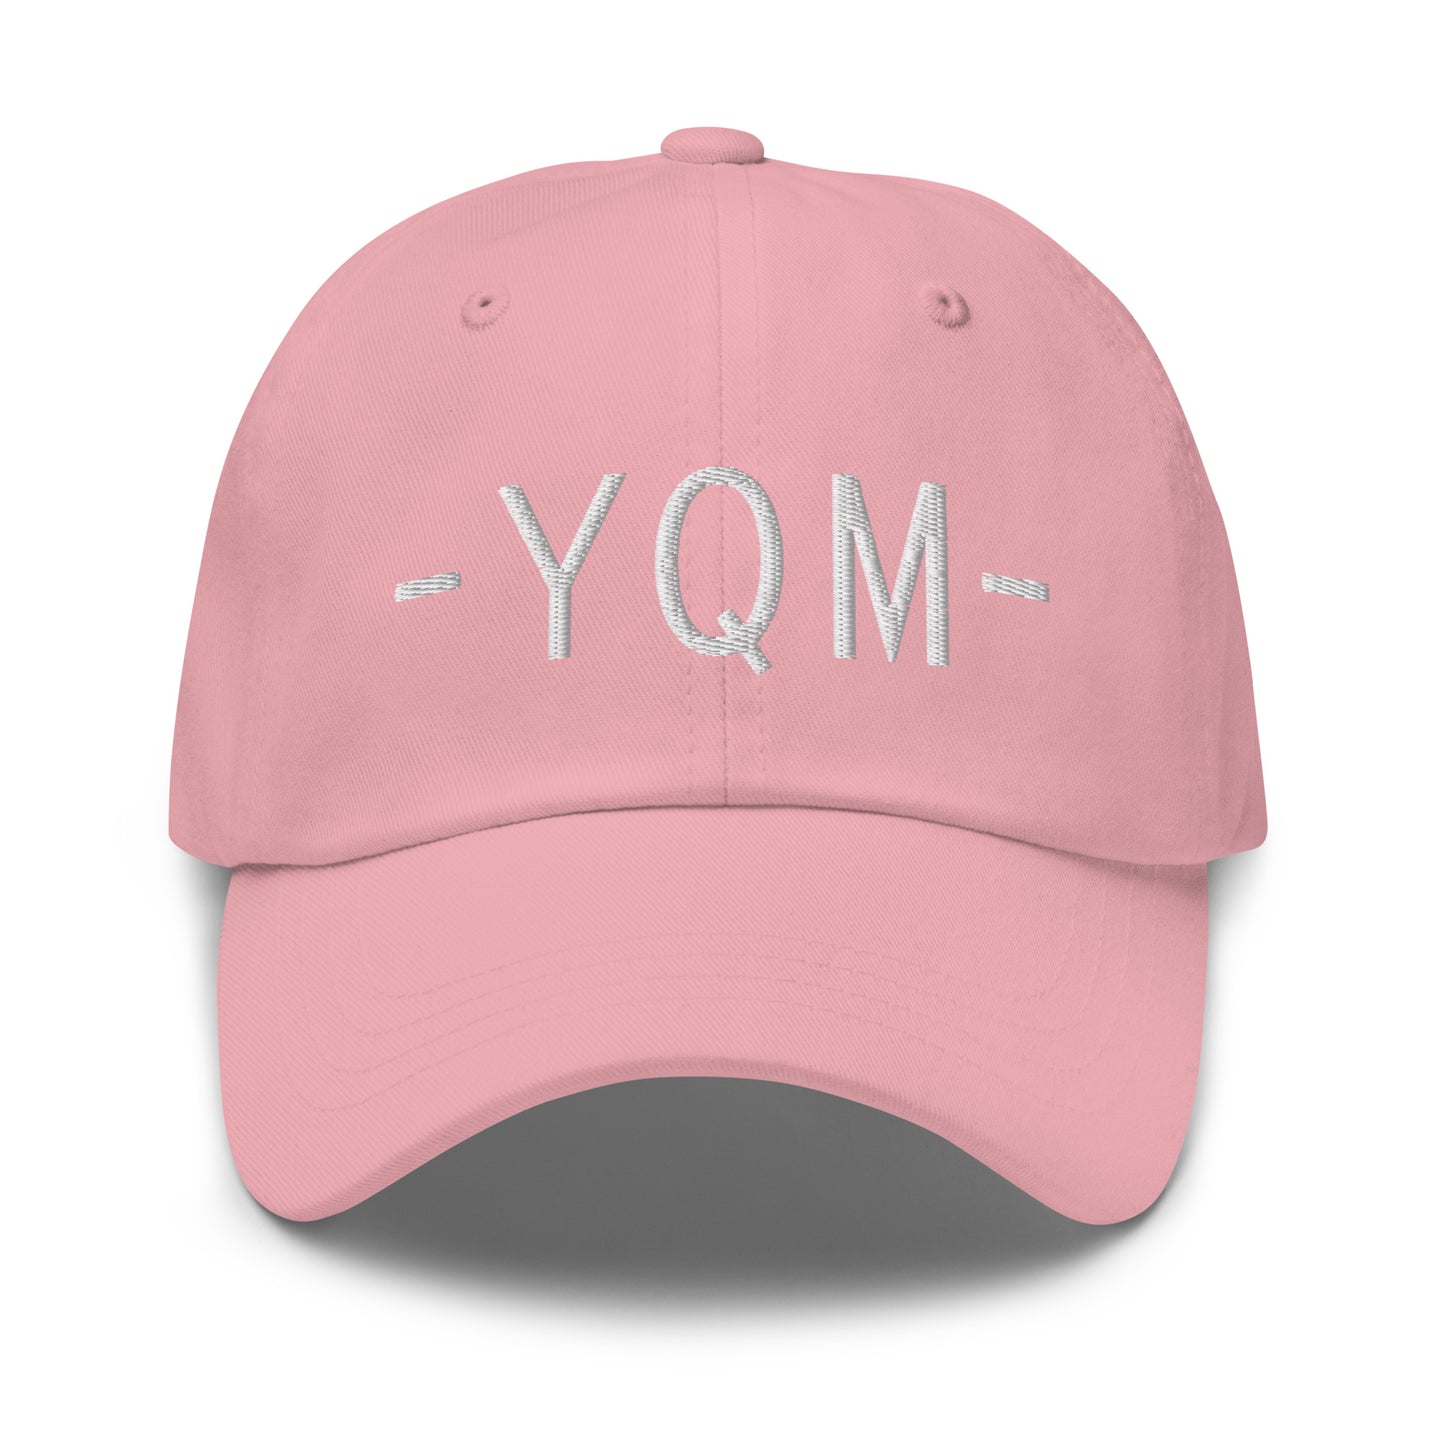 Souvenir Baseball Cap - White • YQM Moncton • YHM Designs - Image 25